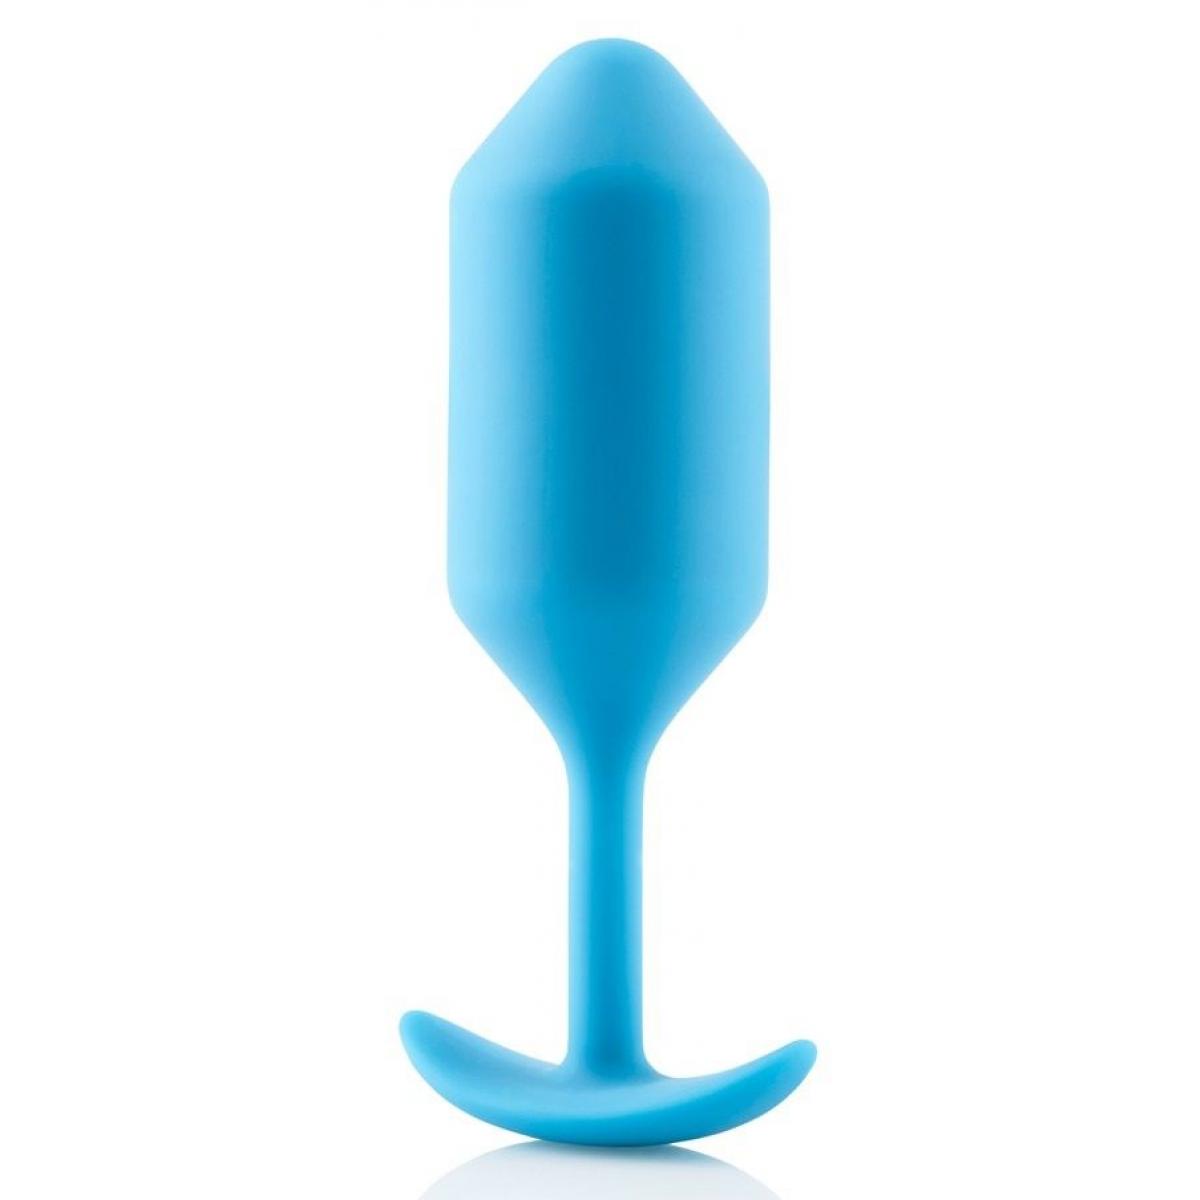 Голубая пробка для ношения B-vibe Snug Plug 3 - 12,7 см.